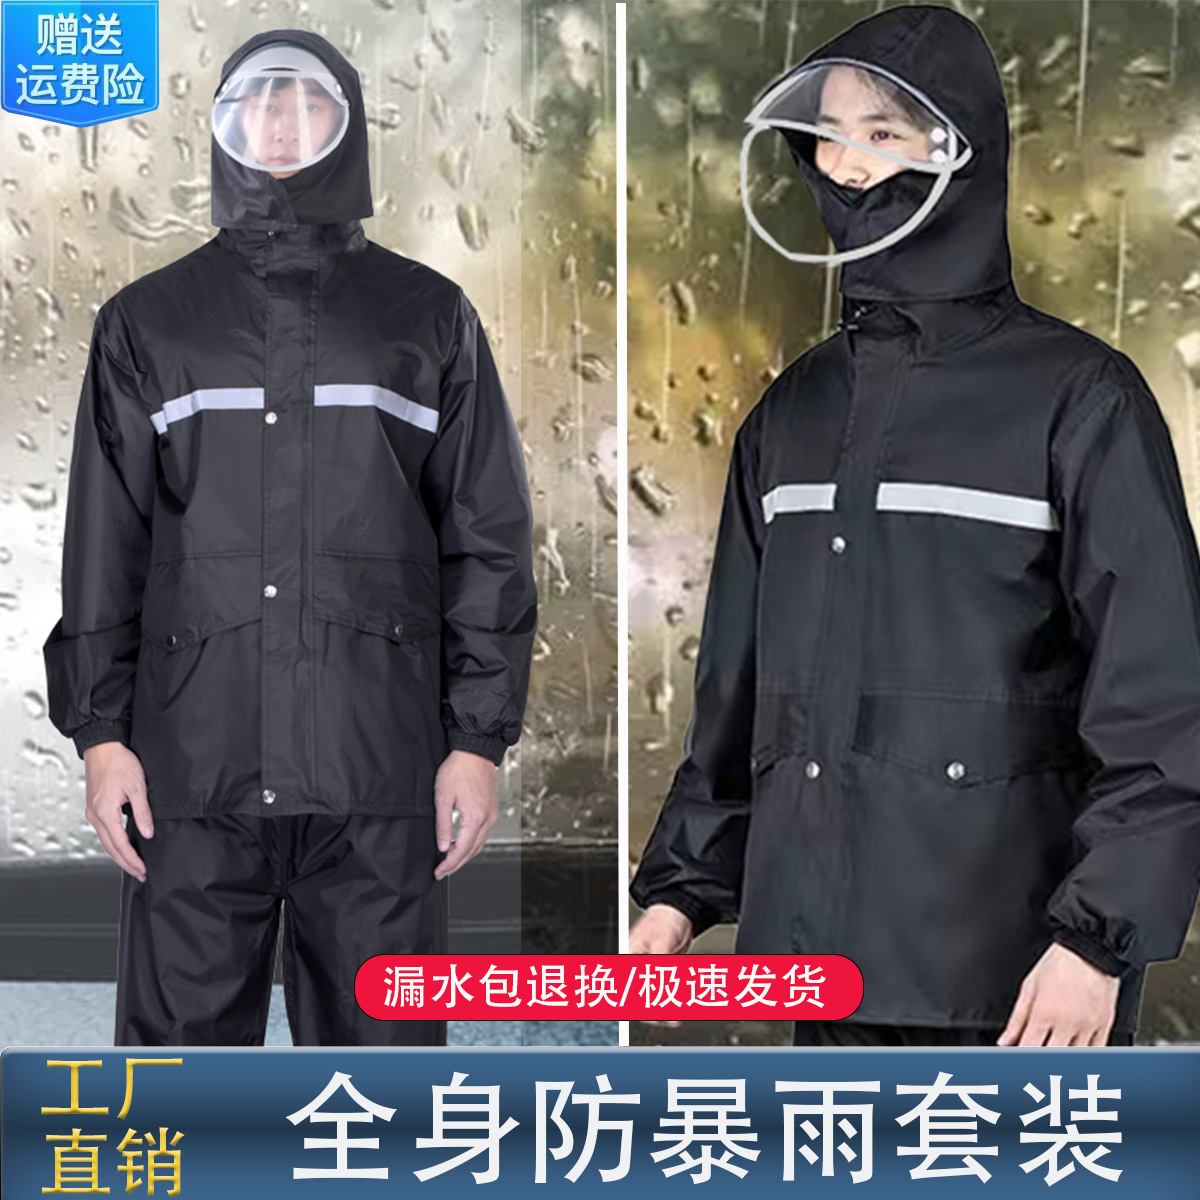 raincoat rain pants suit wholesale labor protection rainproof outdoor motorcycle take-out riding reflective split raincoat